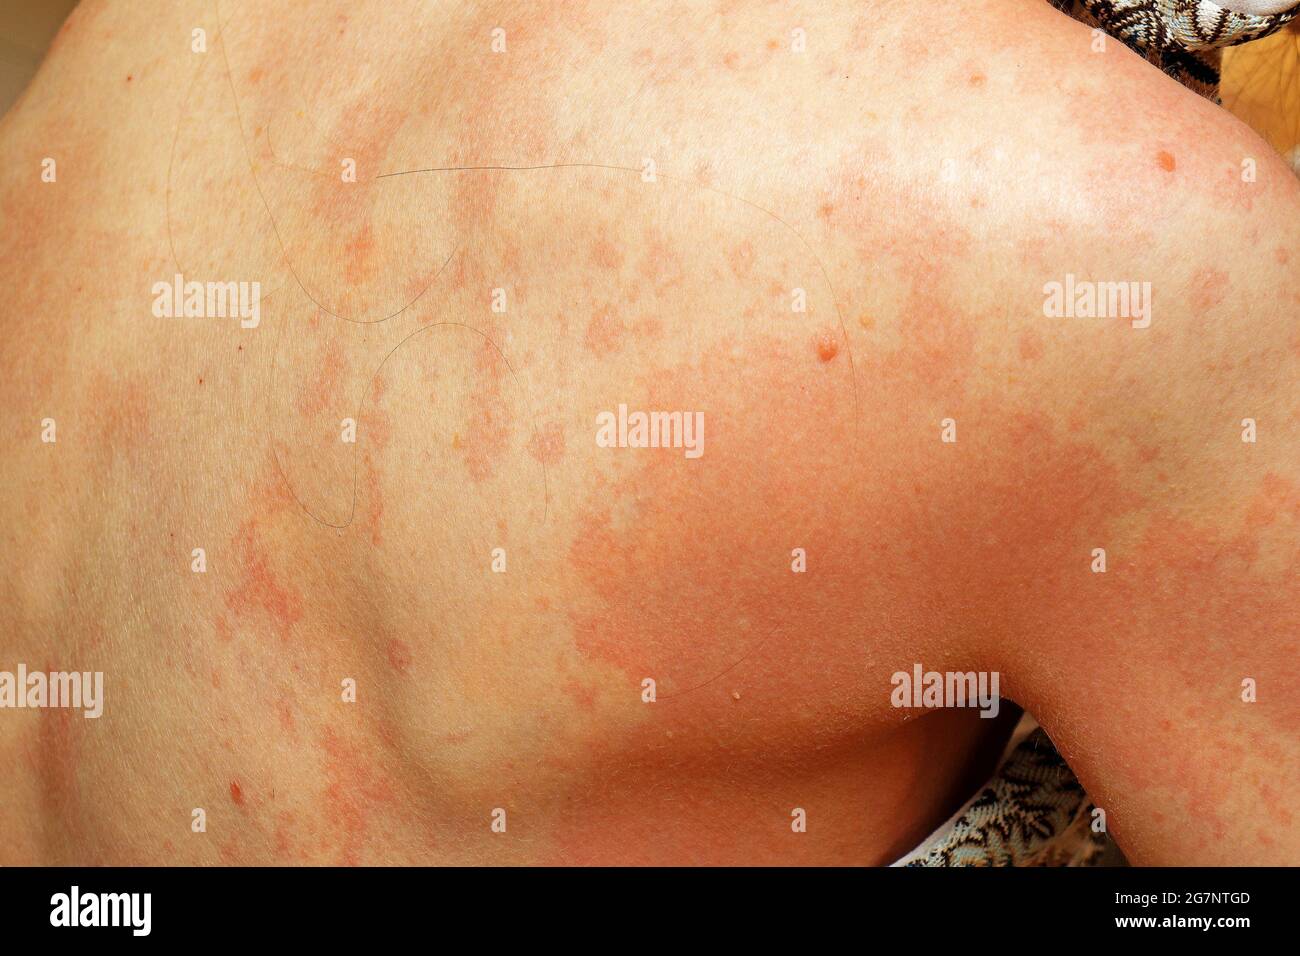 Allergie grave aux taches rouges sur la peau du dos Photo Stock ...